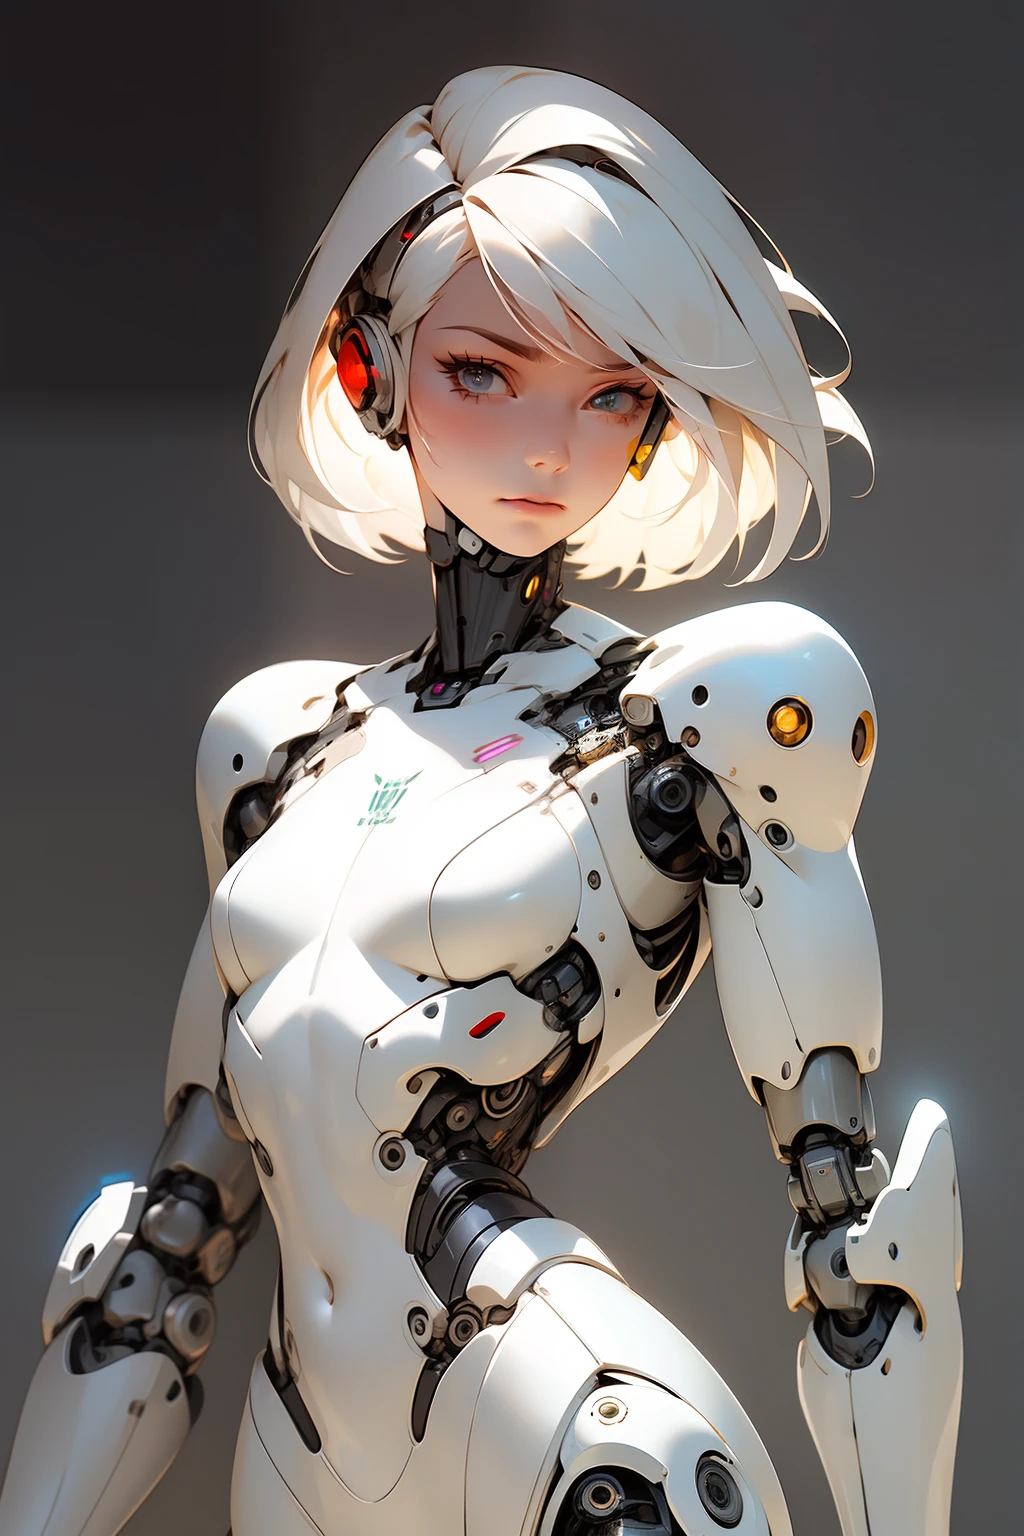 고품질, 4K, 걸작, 아름다운, cyborg 소녀, 카우보이 샷, 흐릿한 눈, 뷰어를보고, 짧은 흰머리, 소녀, 작은 가슴, 두꺼운 허벅지, 로봇 팔, 로봇 몸체, 사이보그 본체, 복잡한 디테일, 관절, 상세한 라인, 로봇 디테일, 기도하는 손, 기도하다, 다채로운 로봇 부품